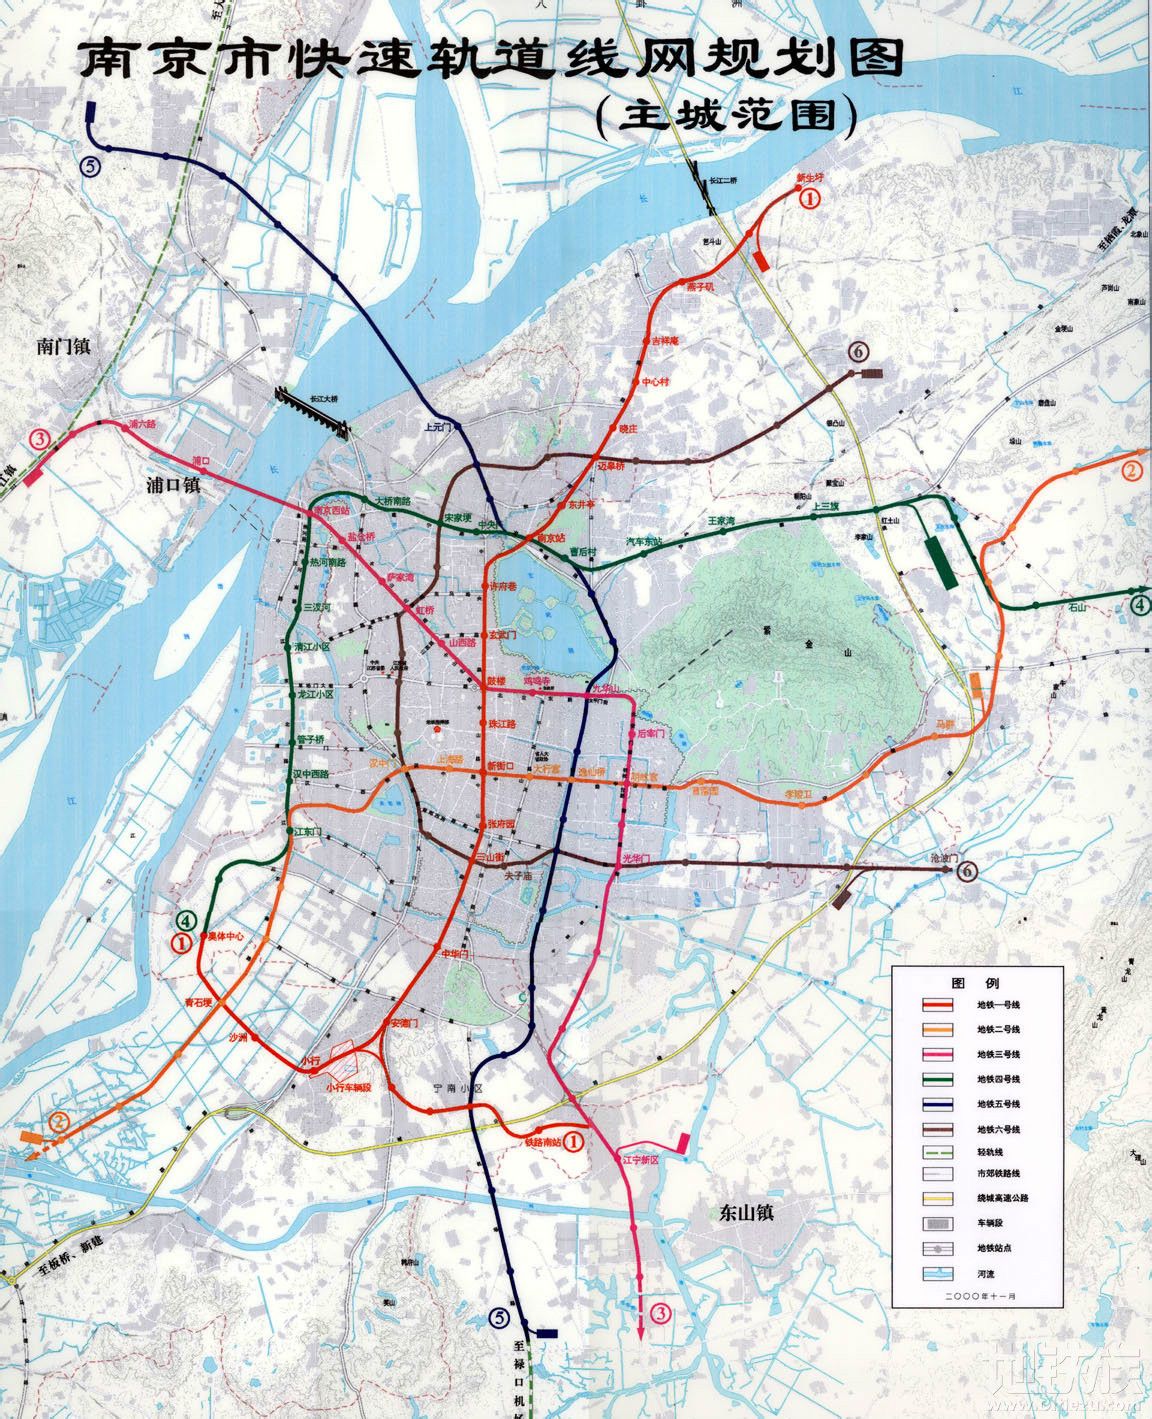 2000年南京快速軌道交通路網規劃圖